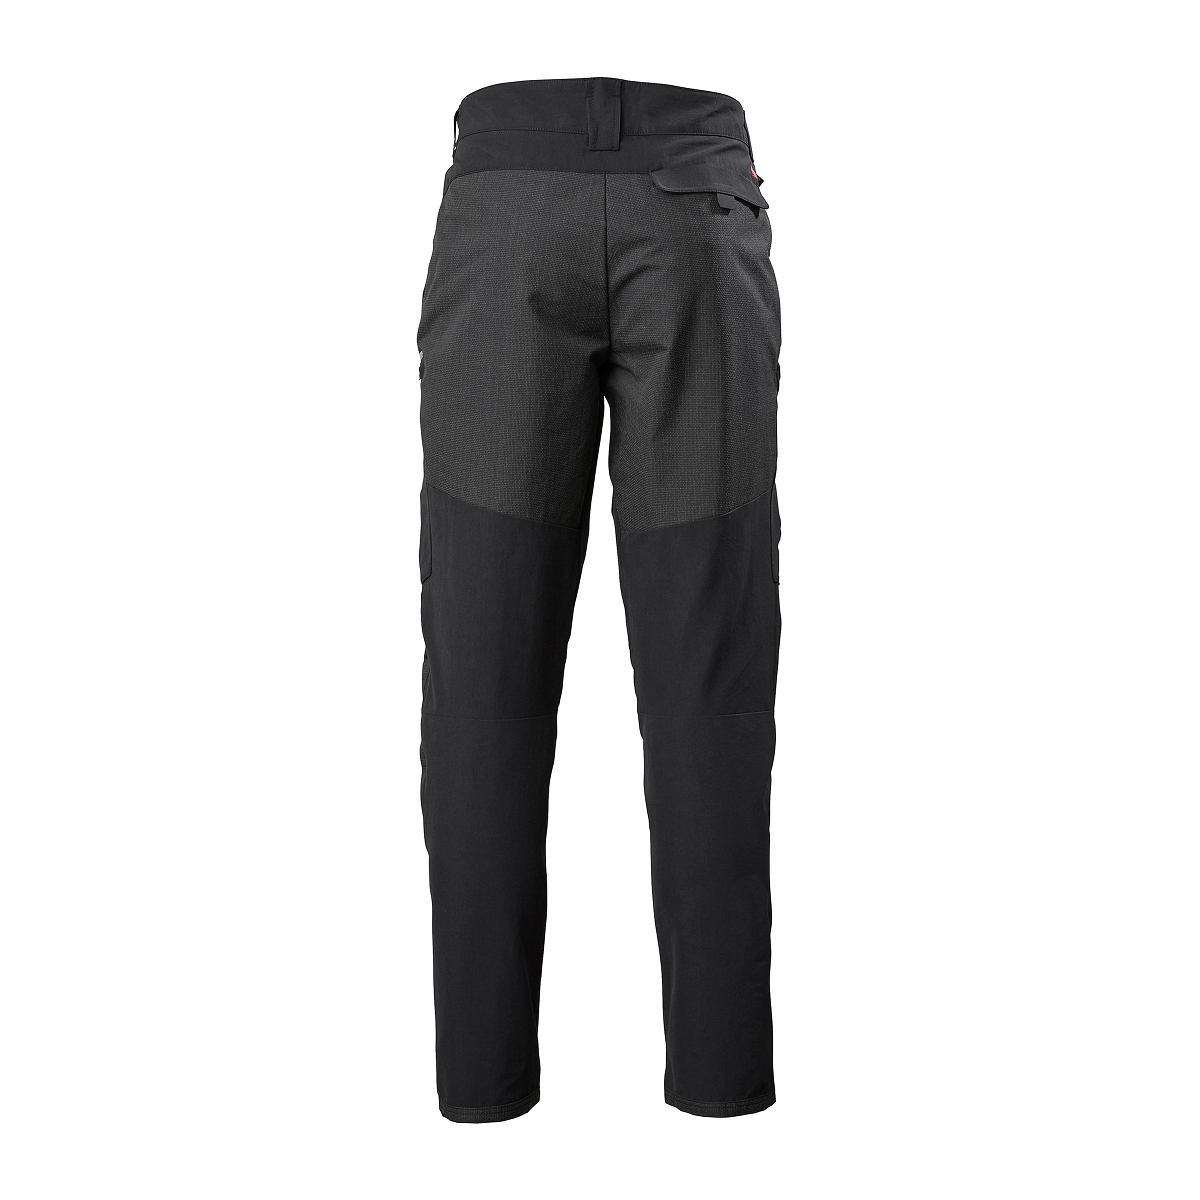 Musto Evolution Performance pantalon de voile 2.0 homme noir, taille 30